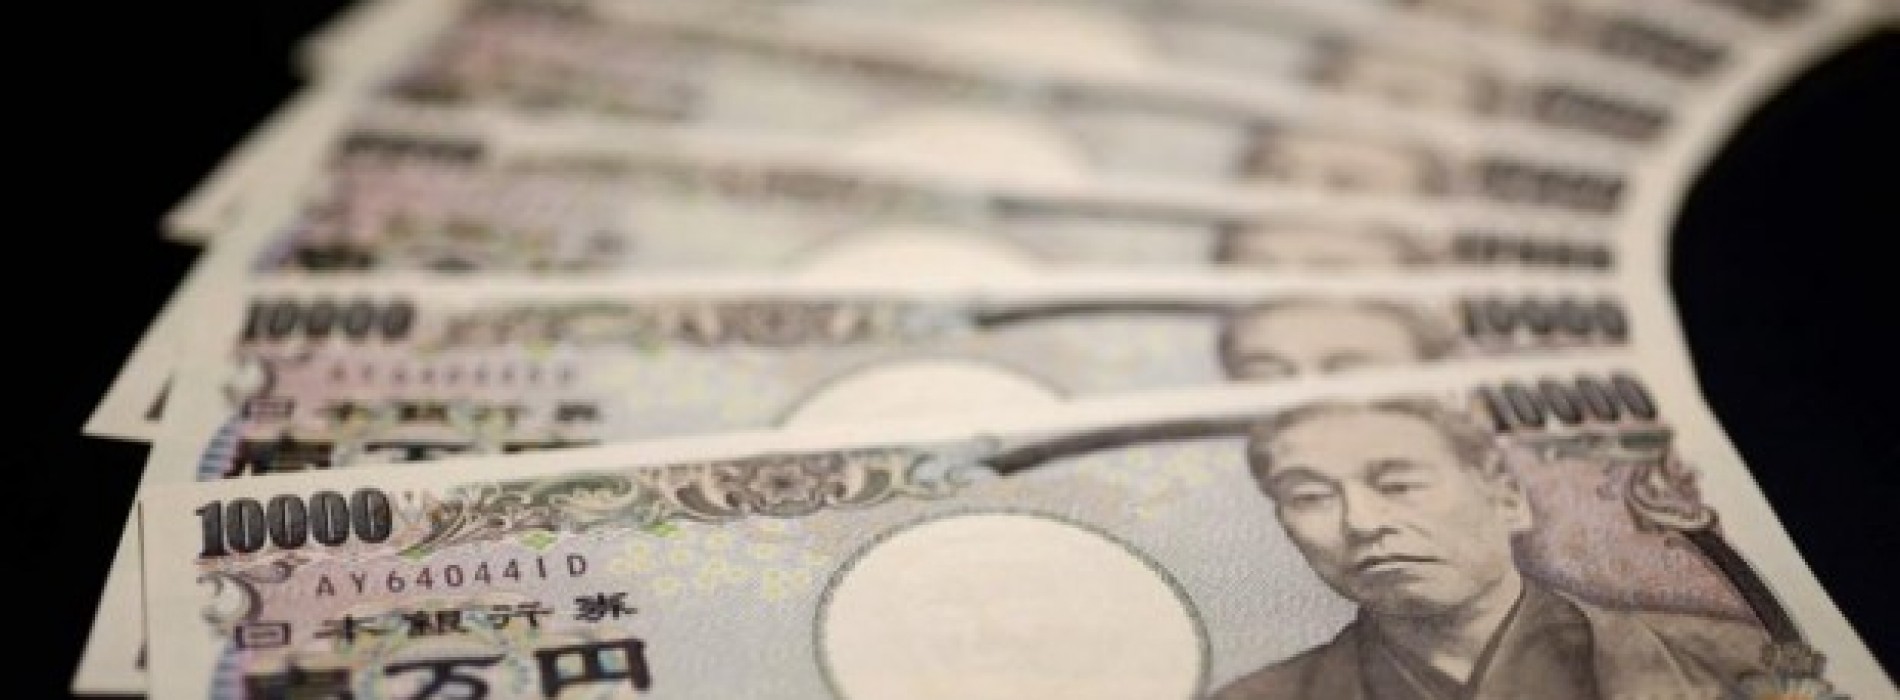 Poranny komentarz walutowy – dalsze osłabienie się jena, przed RPP